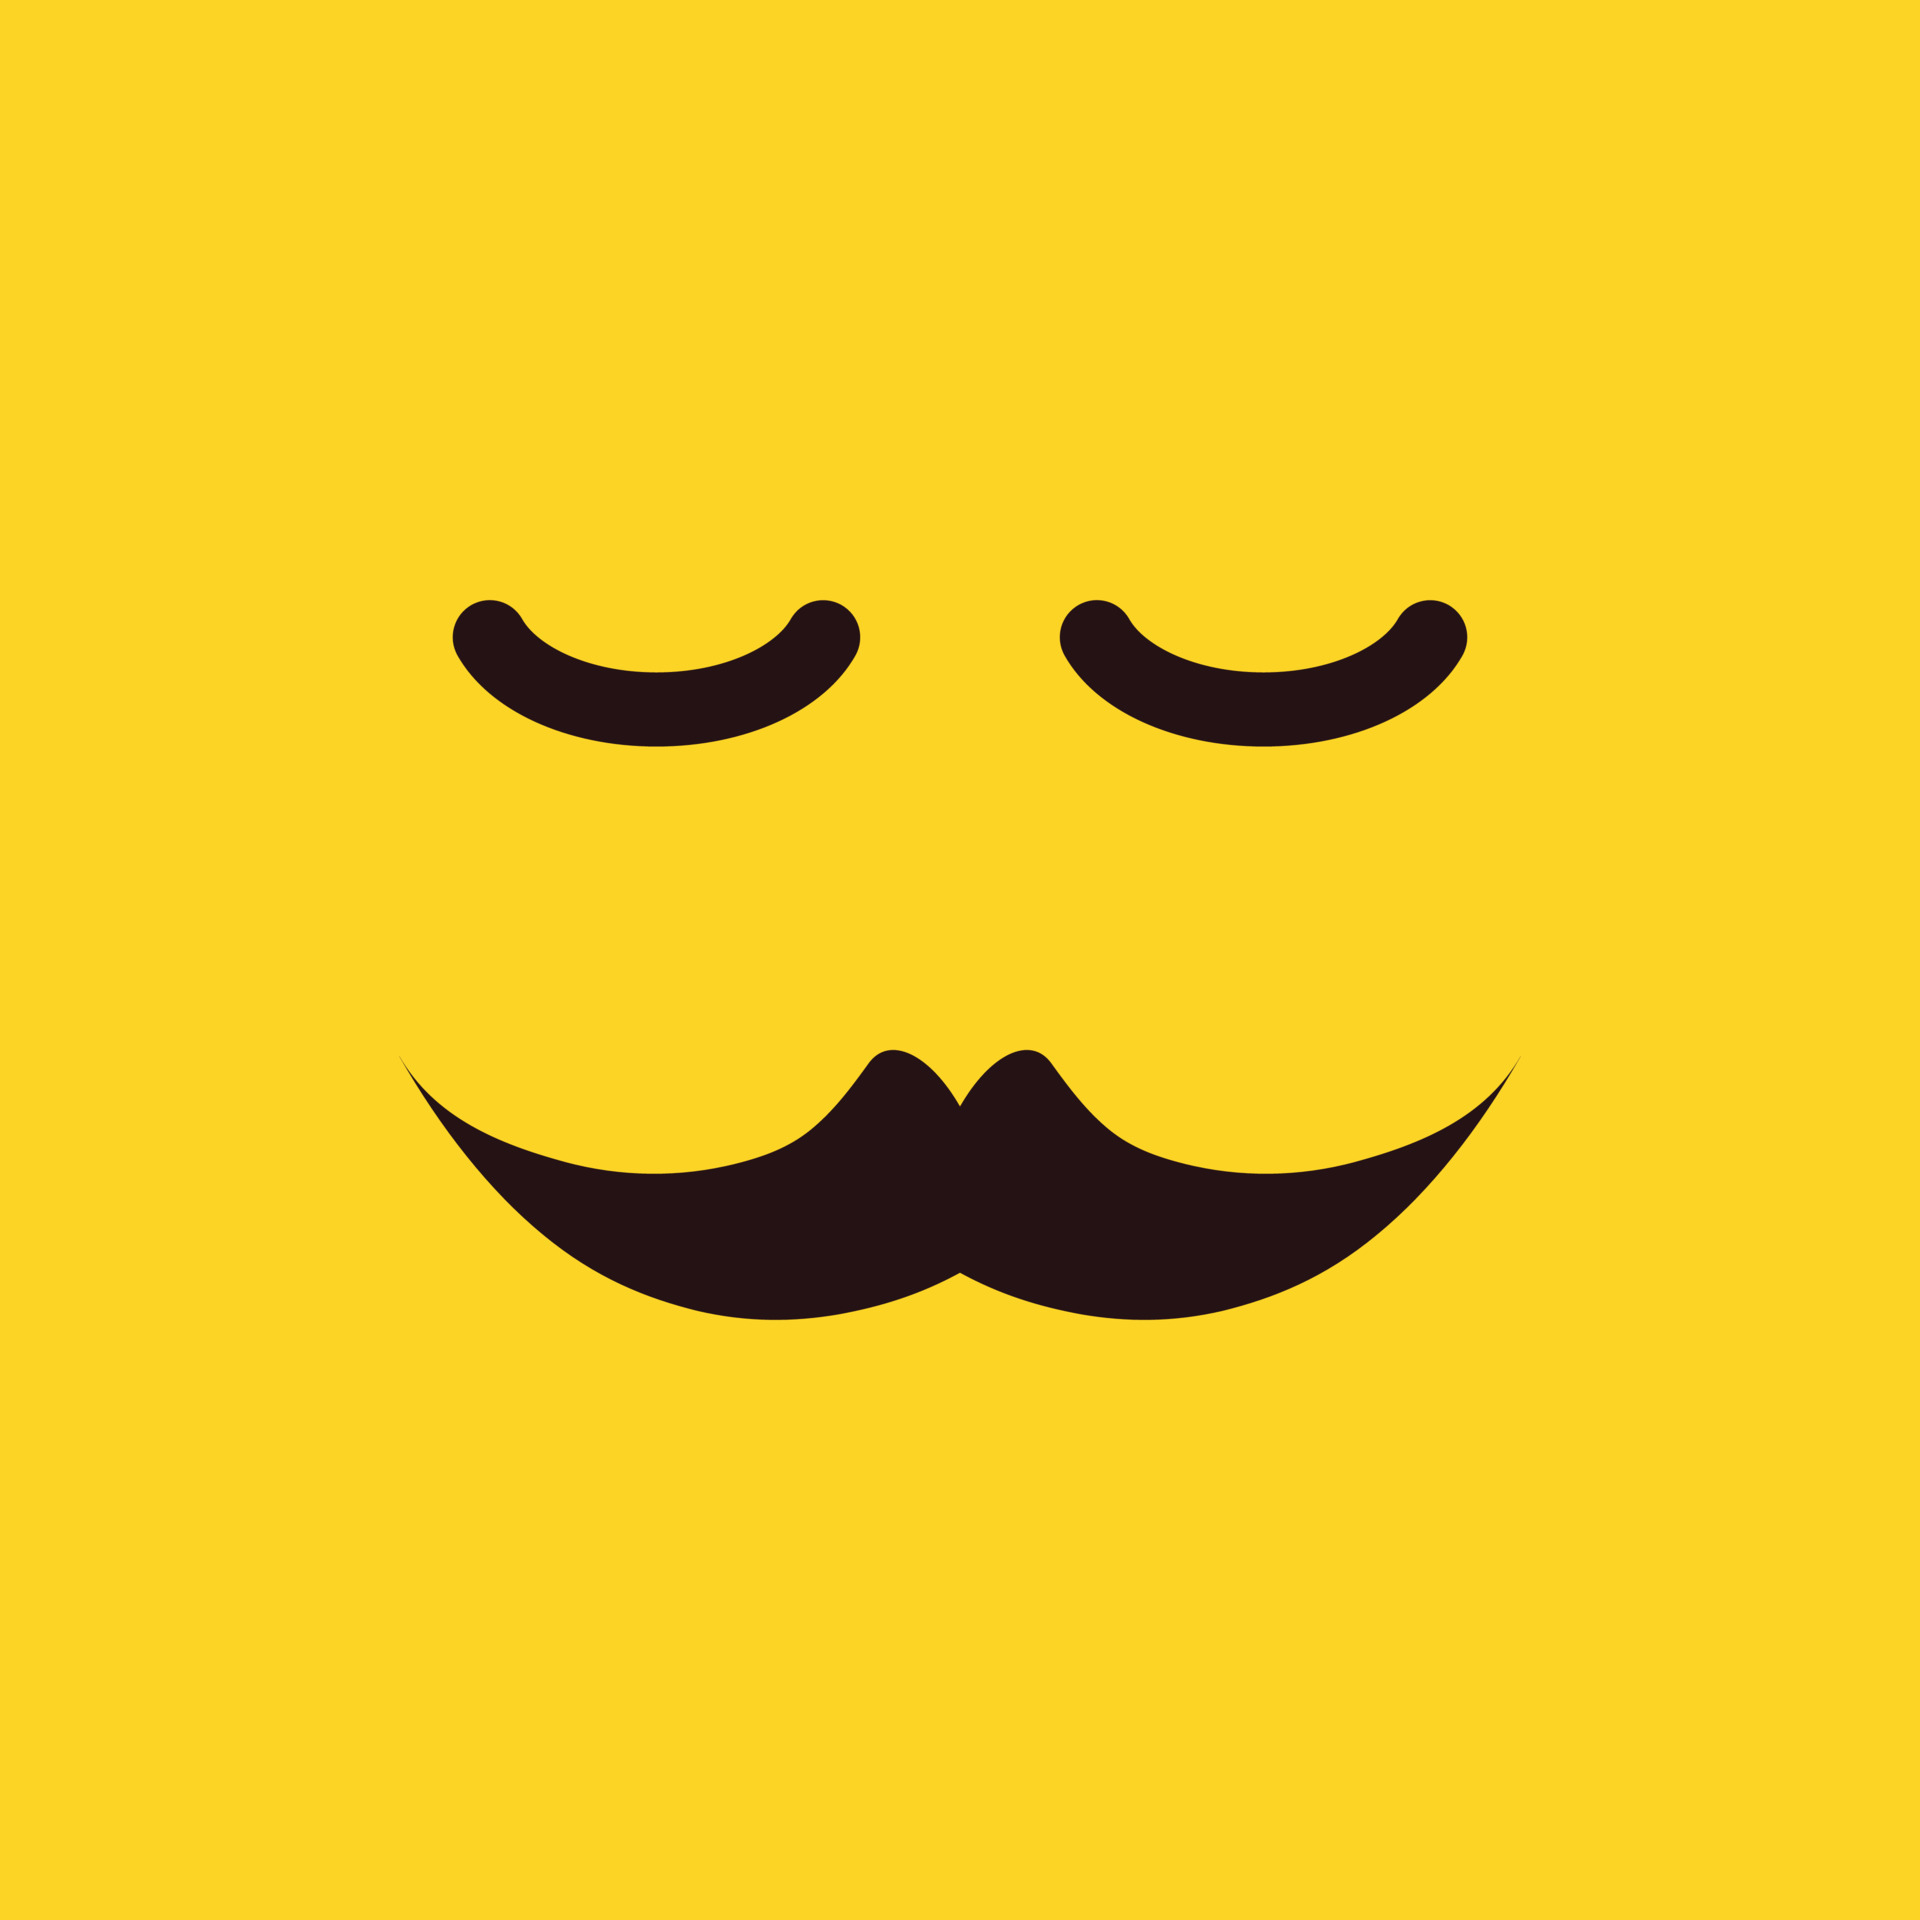 emoji face vector for website symbol icon presentation 9292809 Vector ...